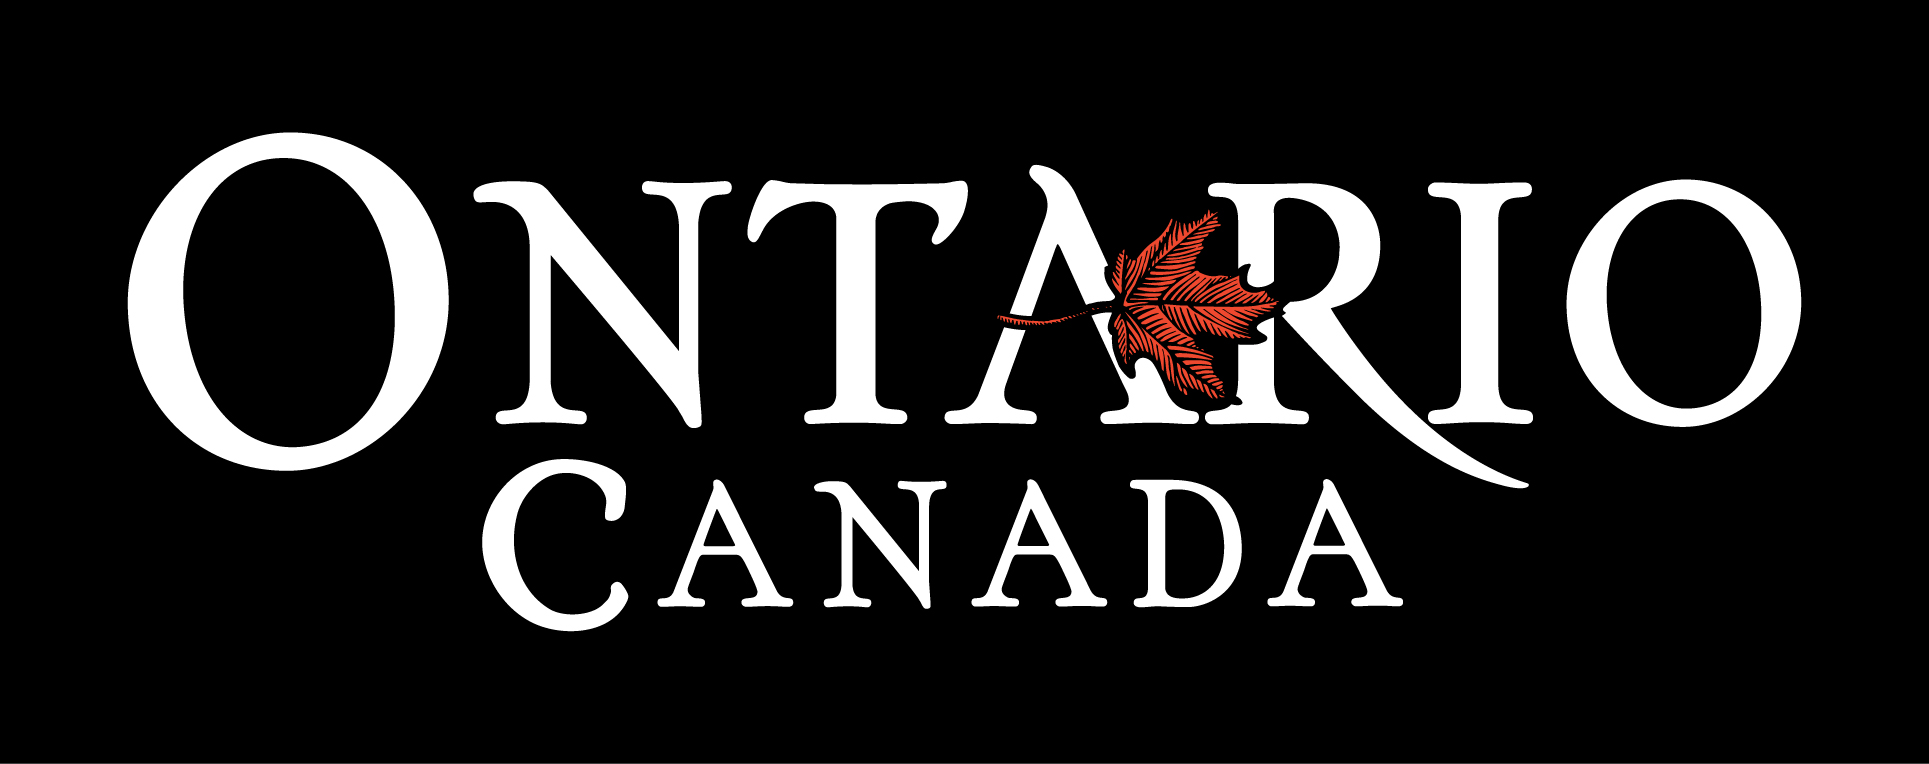 Ontario, Canada logo - two-colour reverse